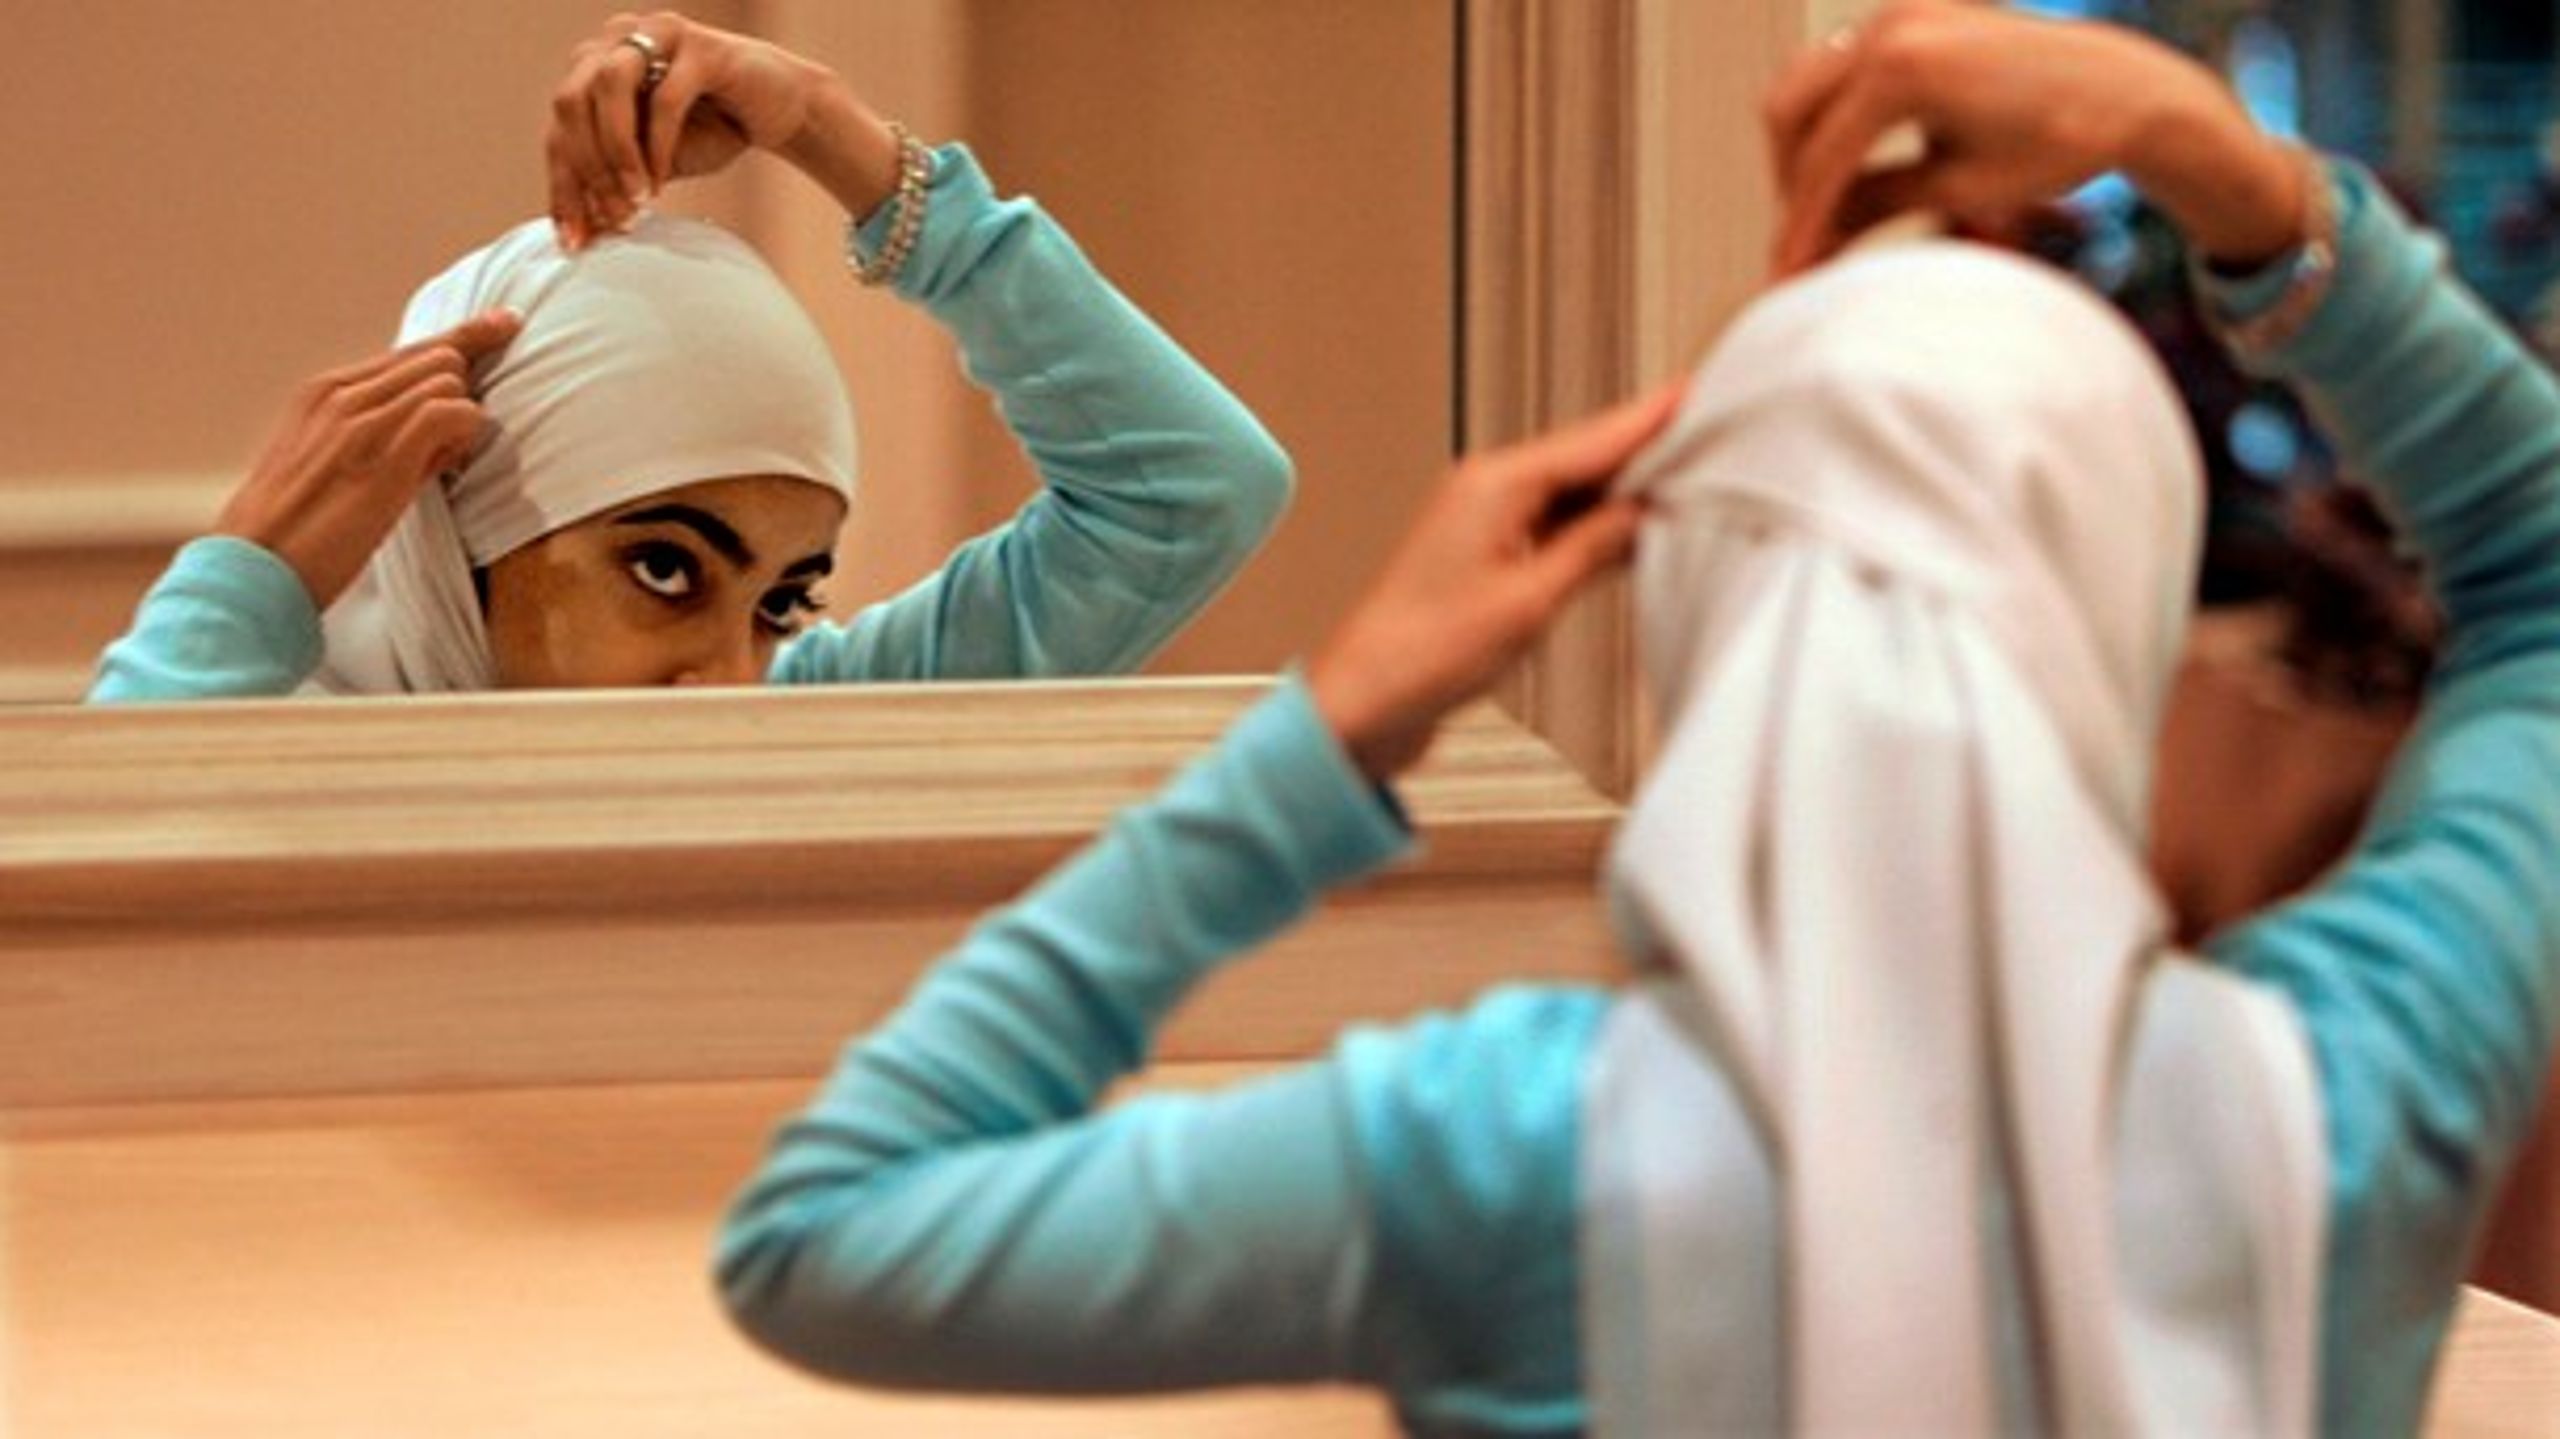 Integration er ved at blive til assimilation i forklædning, skriver 18-årige Zenab Al-Hachimi. (Arkivfoto)